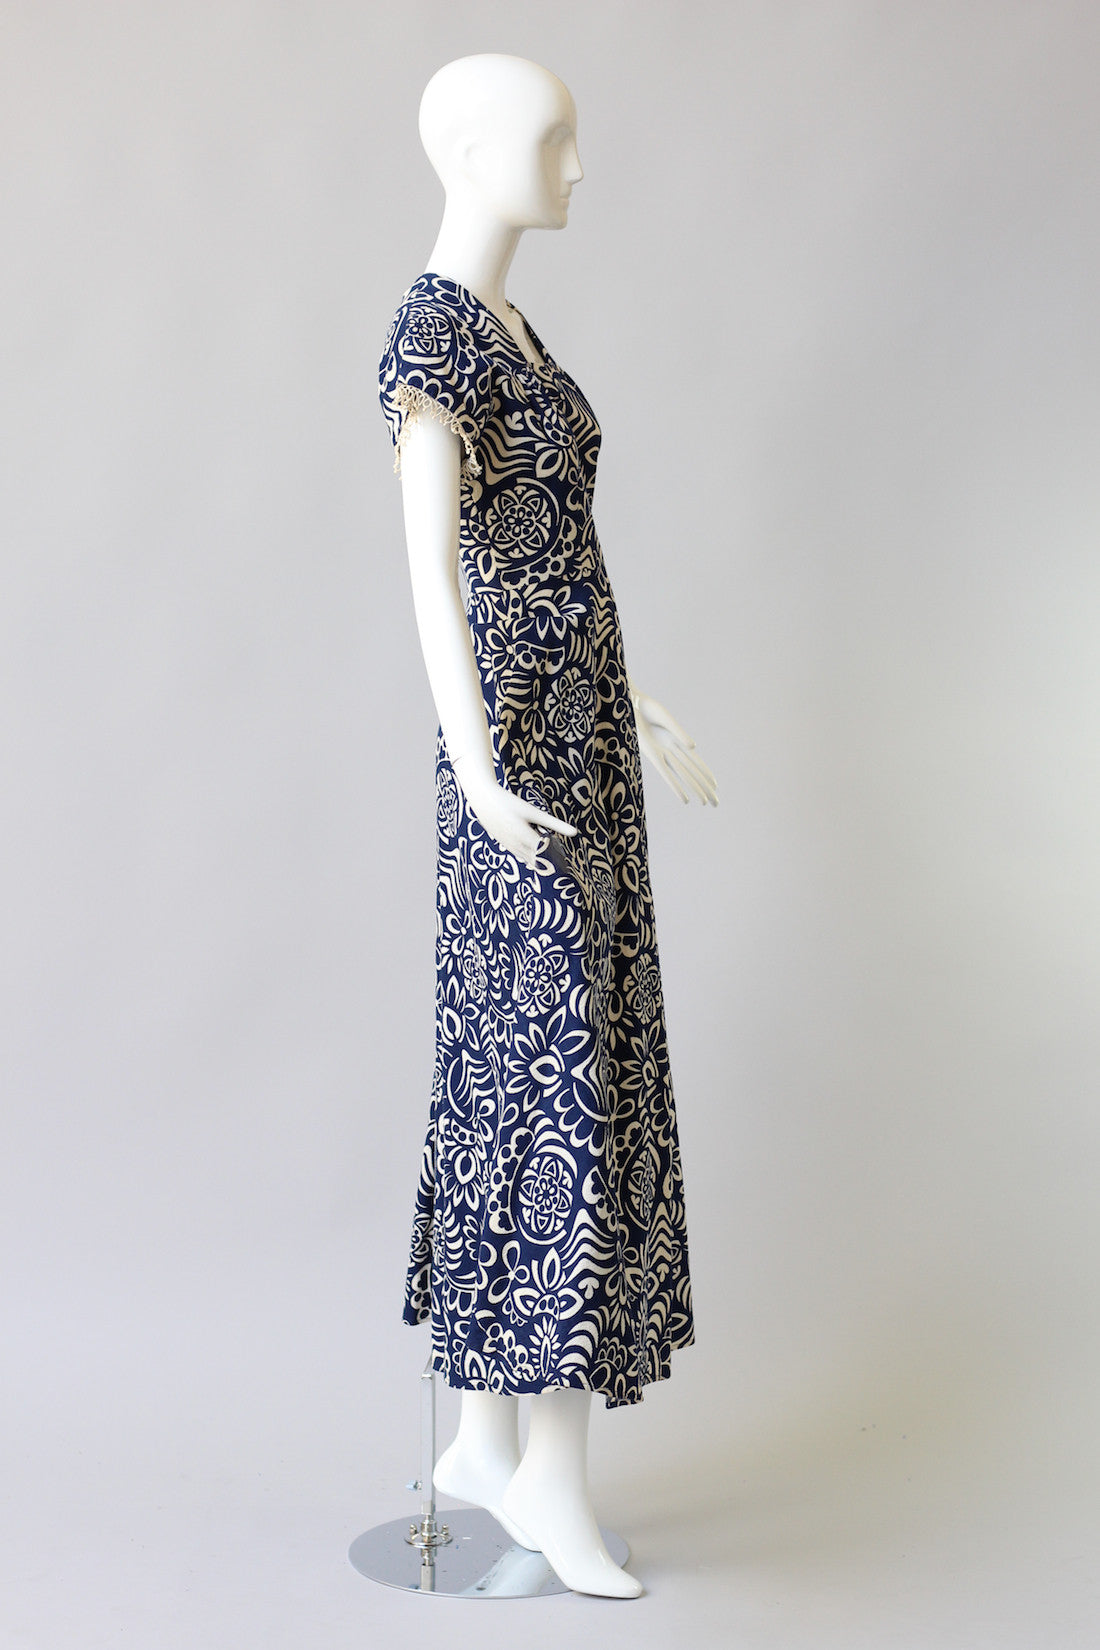 Rare 1940s Printed Cotton Pique Beach Dress